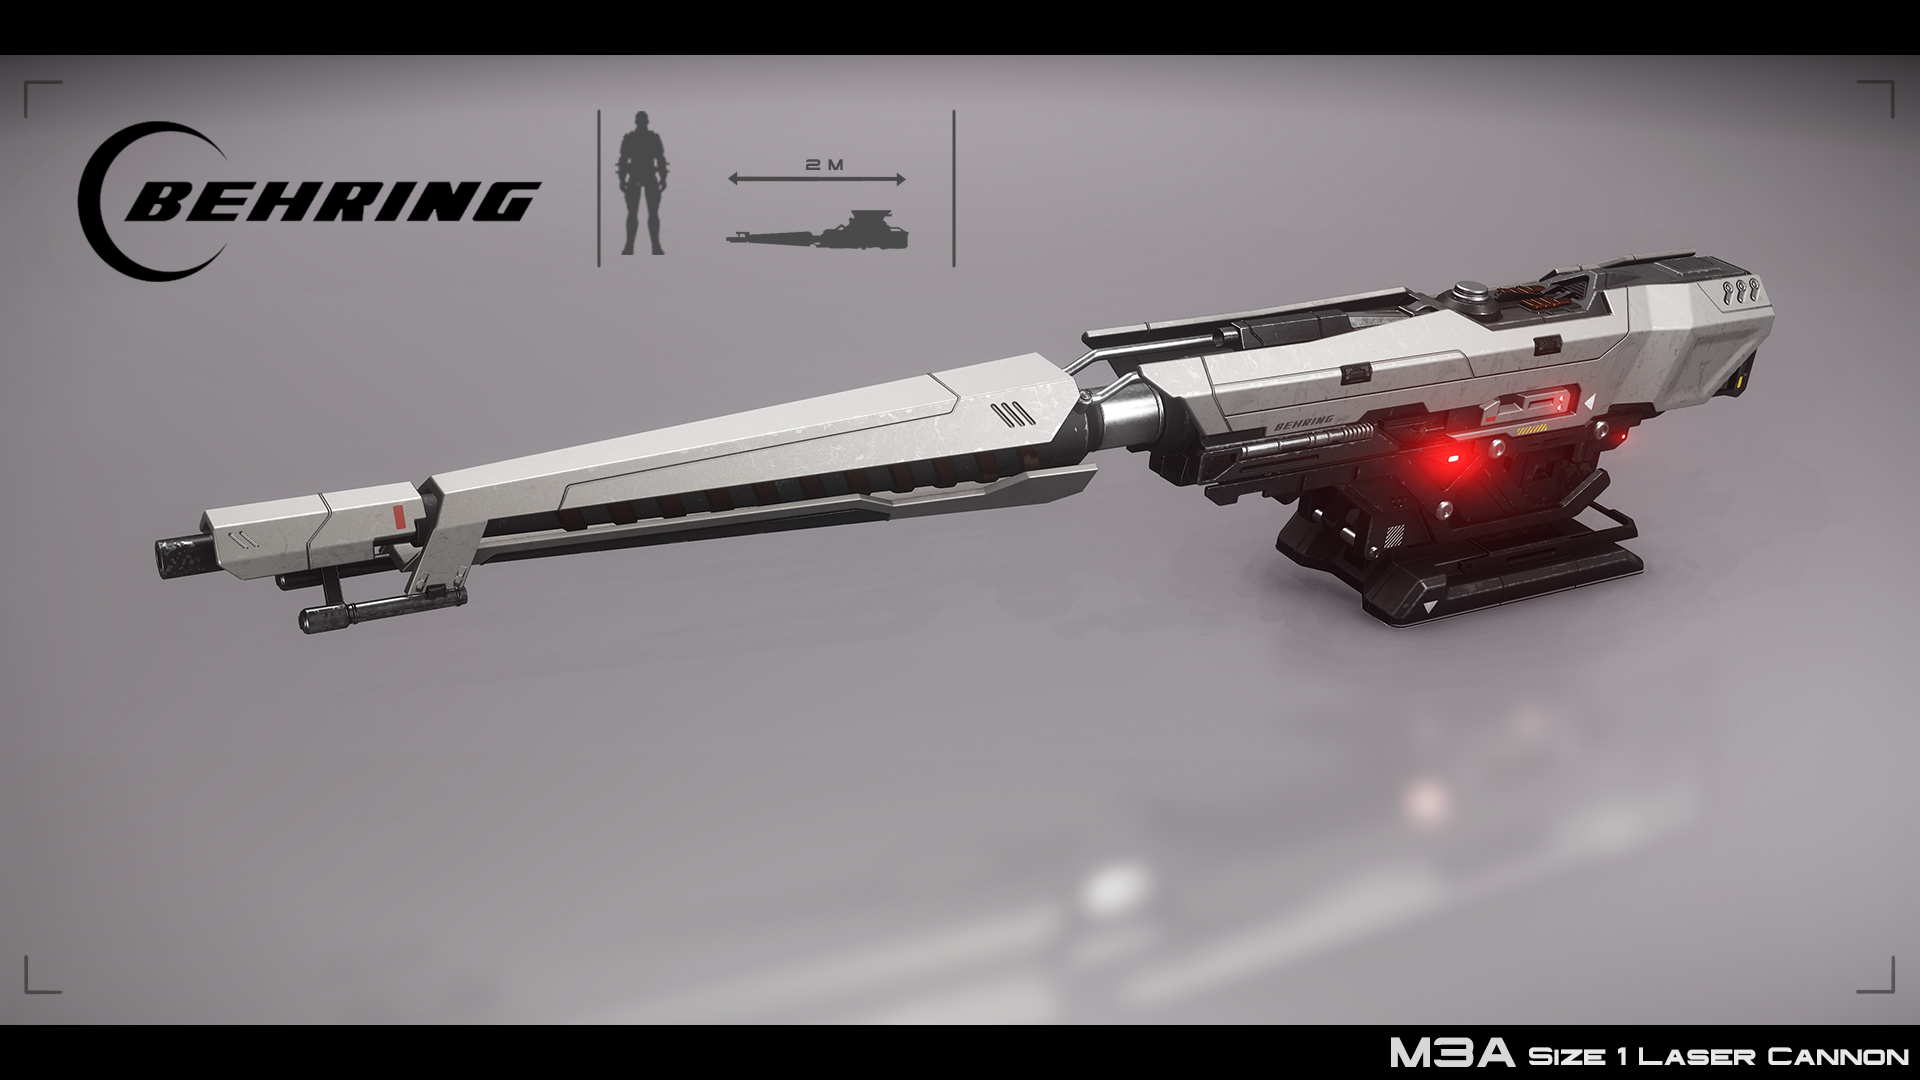 Behring M3A Laser Cannon Sneak Peek .reddit.com